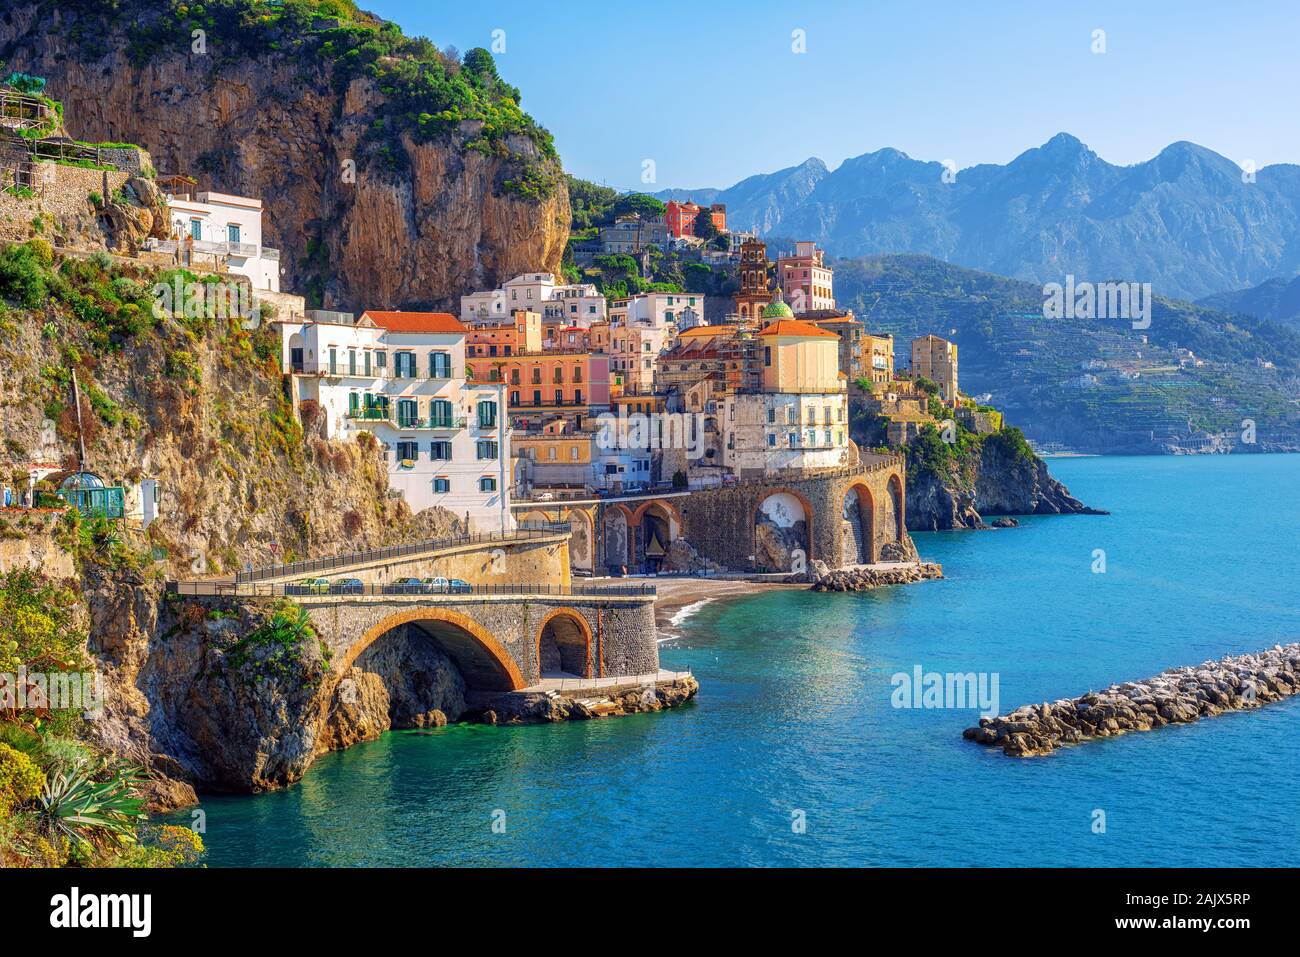 Atrani ciudad por Amalfi en el hermoso mar Mediterráneo en la costa de Amalfi, Nápoles, Italia Foto de stock